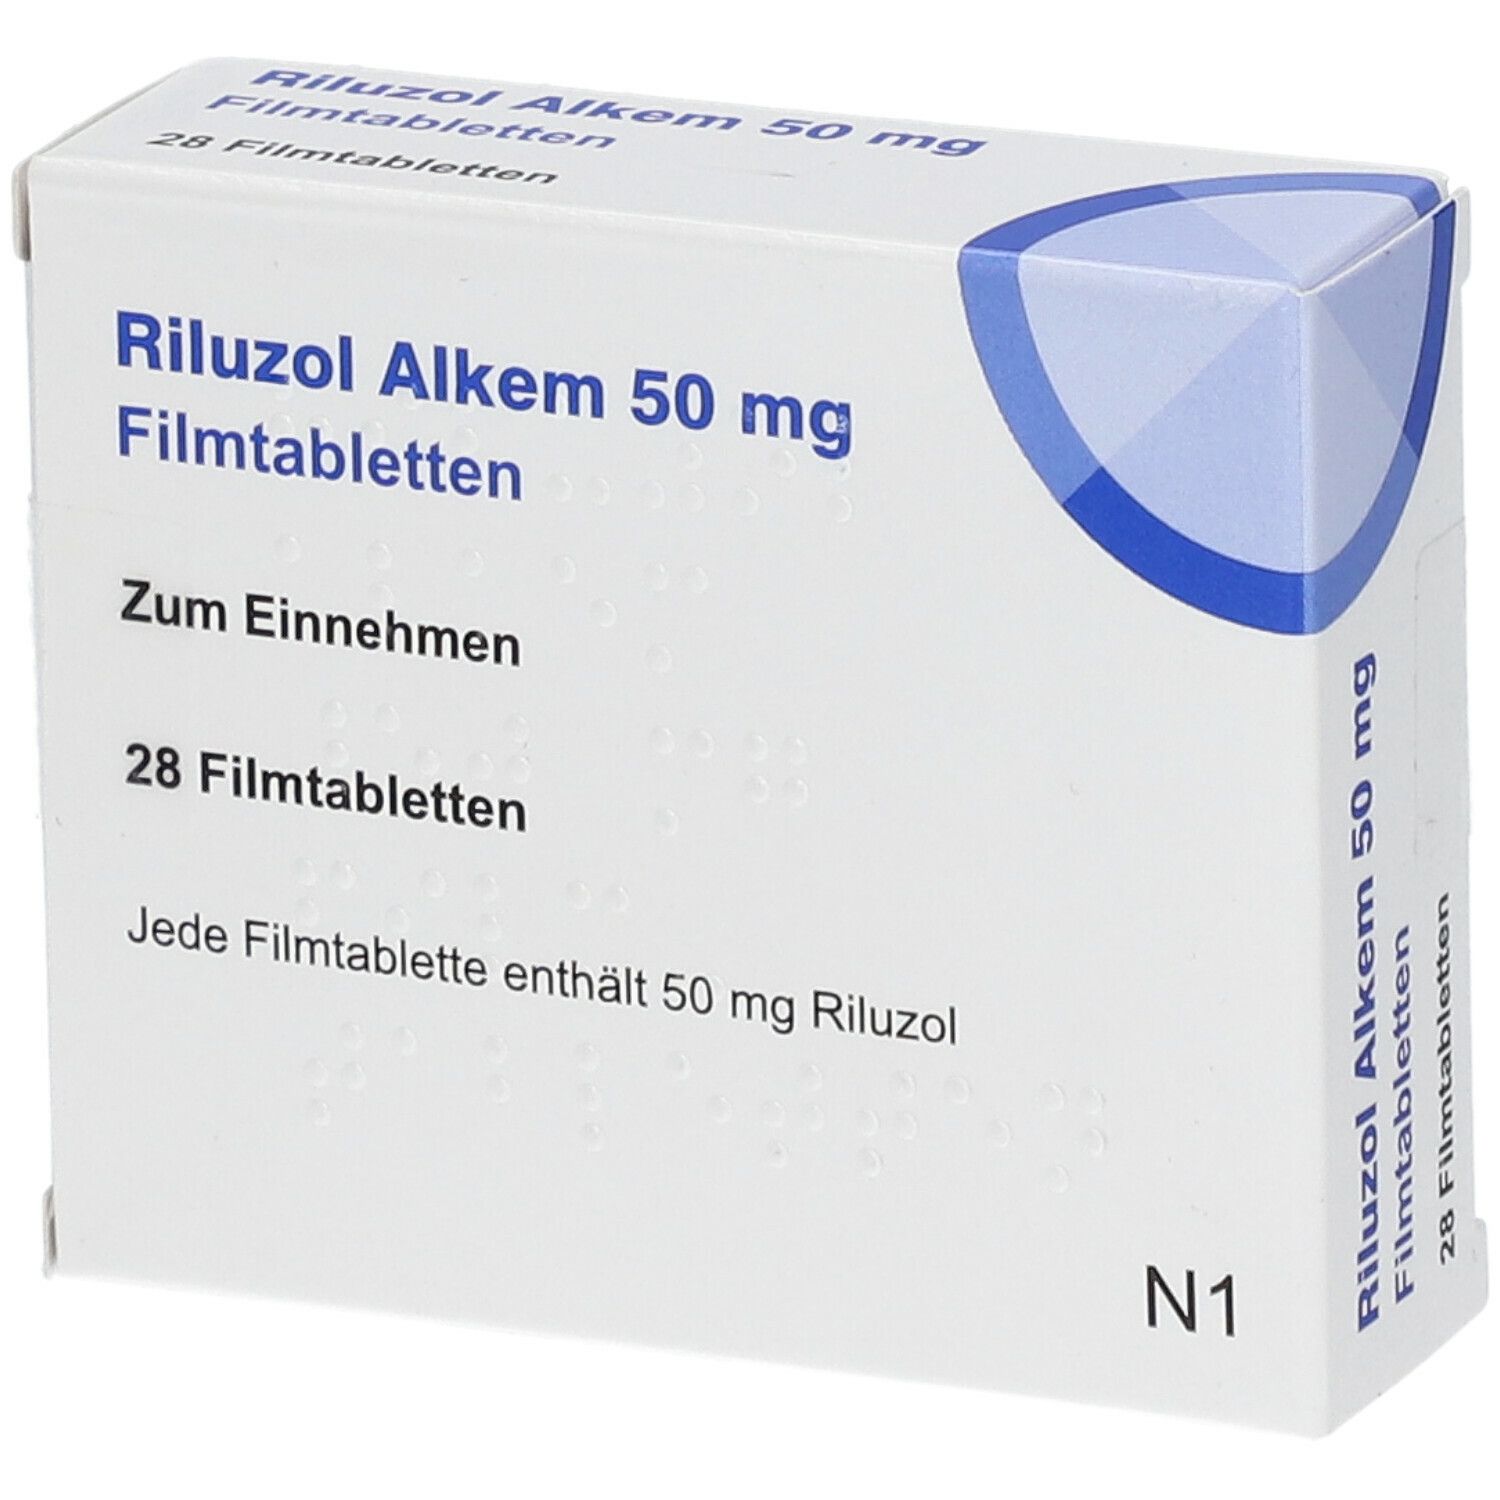 Riluzol Alkem 50 mg